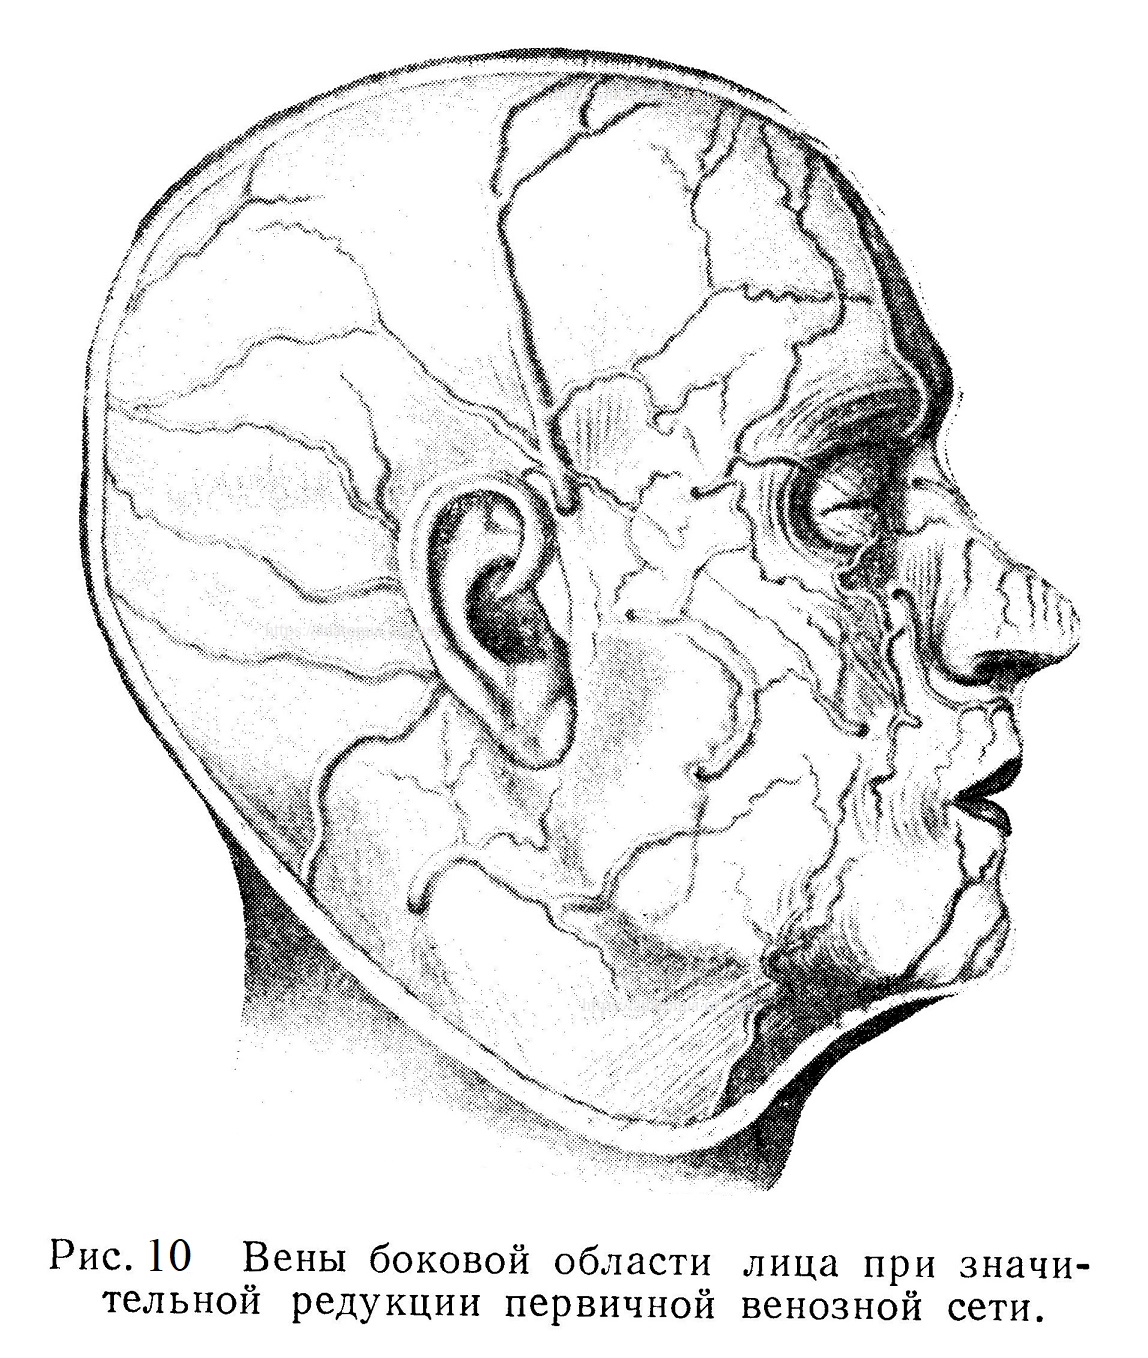 Вены боковой области лица при значительной редукции первичной венозной сети.